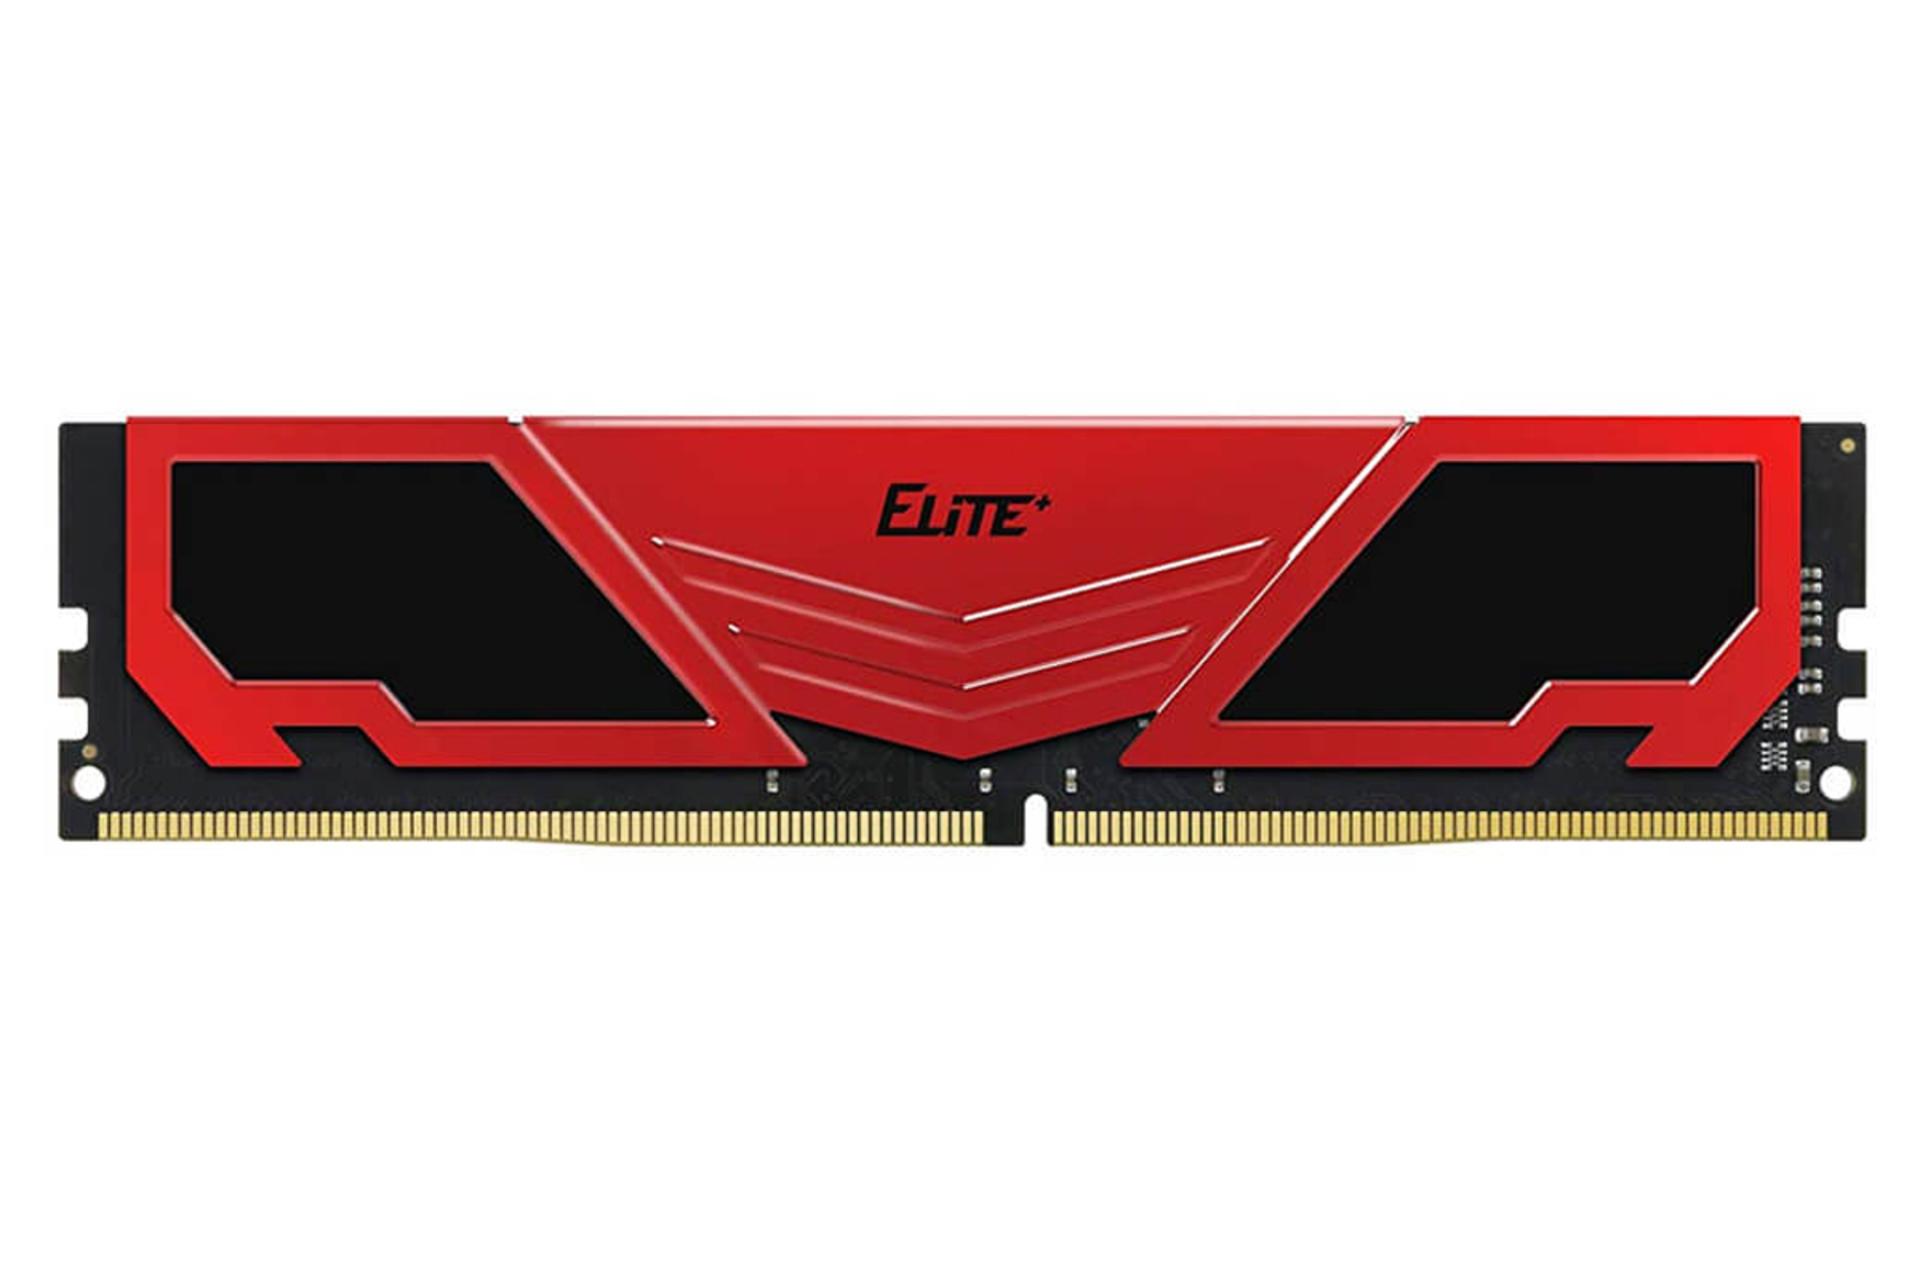 رم تیم گروپ ELITE PLUS ظرفیت 32 گیگابایت از نوع DDR4-3200